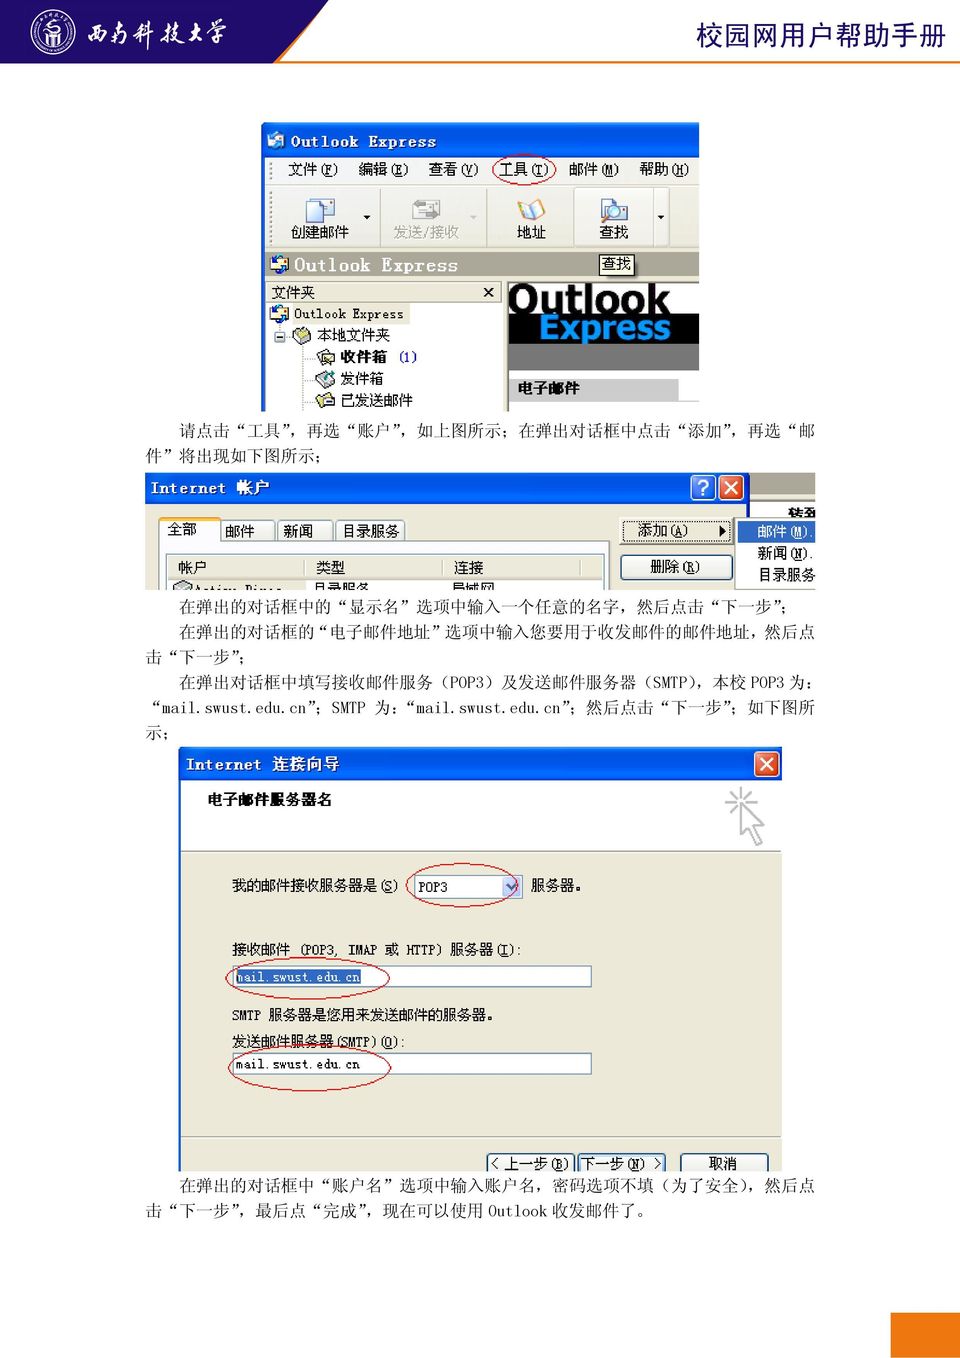 收 邮 件 服 务 (POP3) 及 发 送 邮 件 服 务 器 (SMTP), 本 校 POP3 为 : mail.swust.edu.